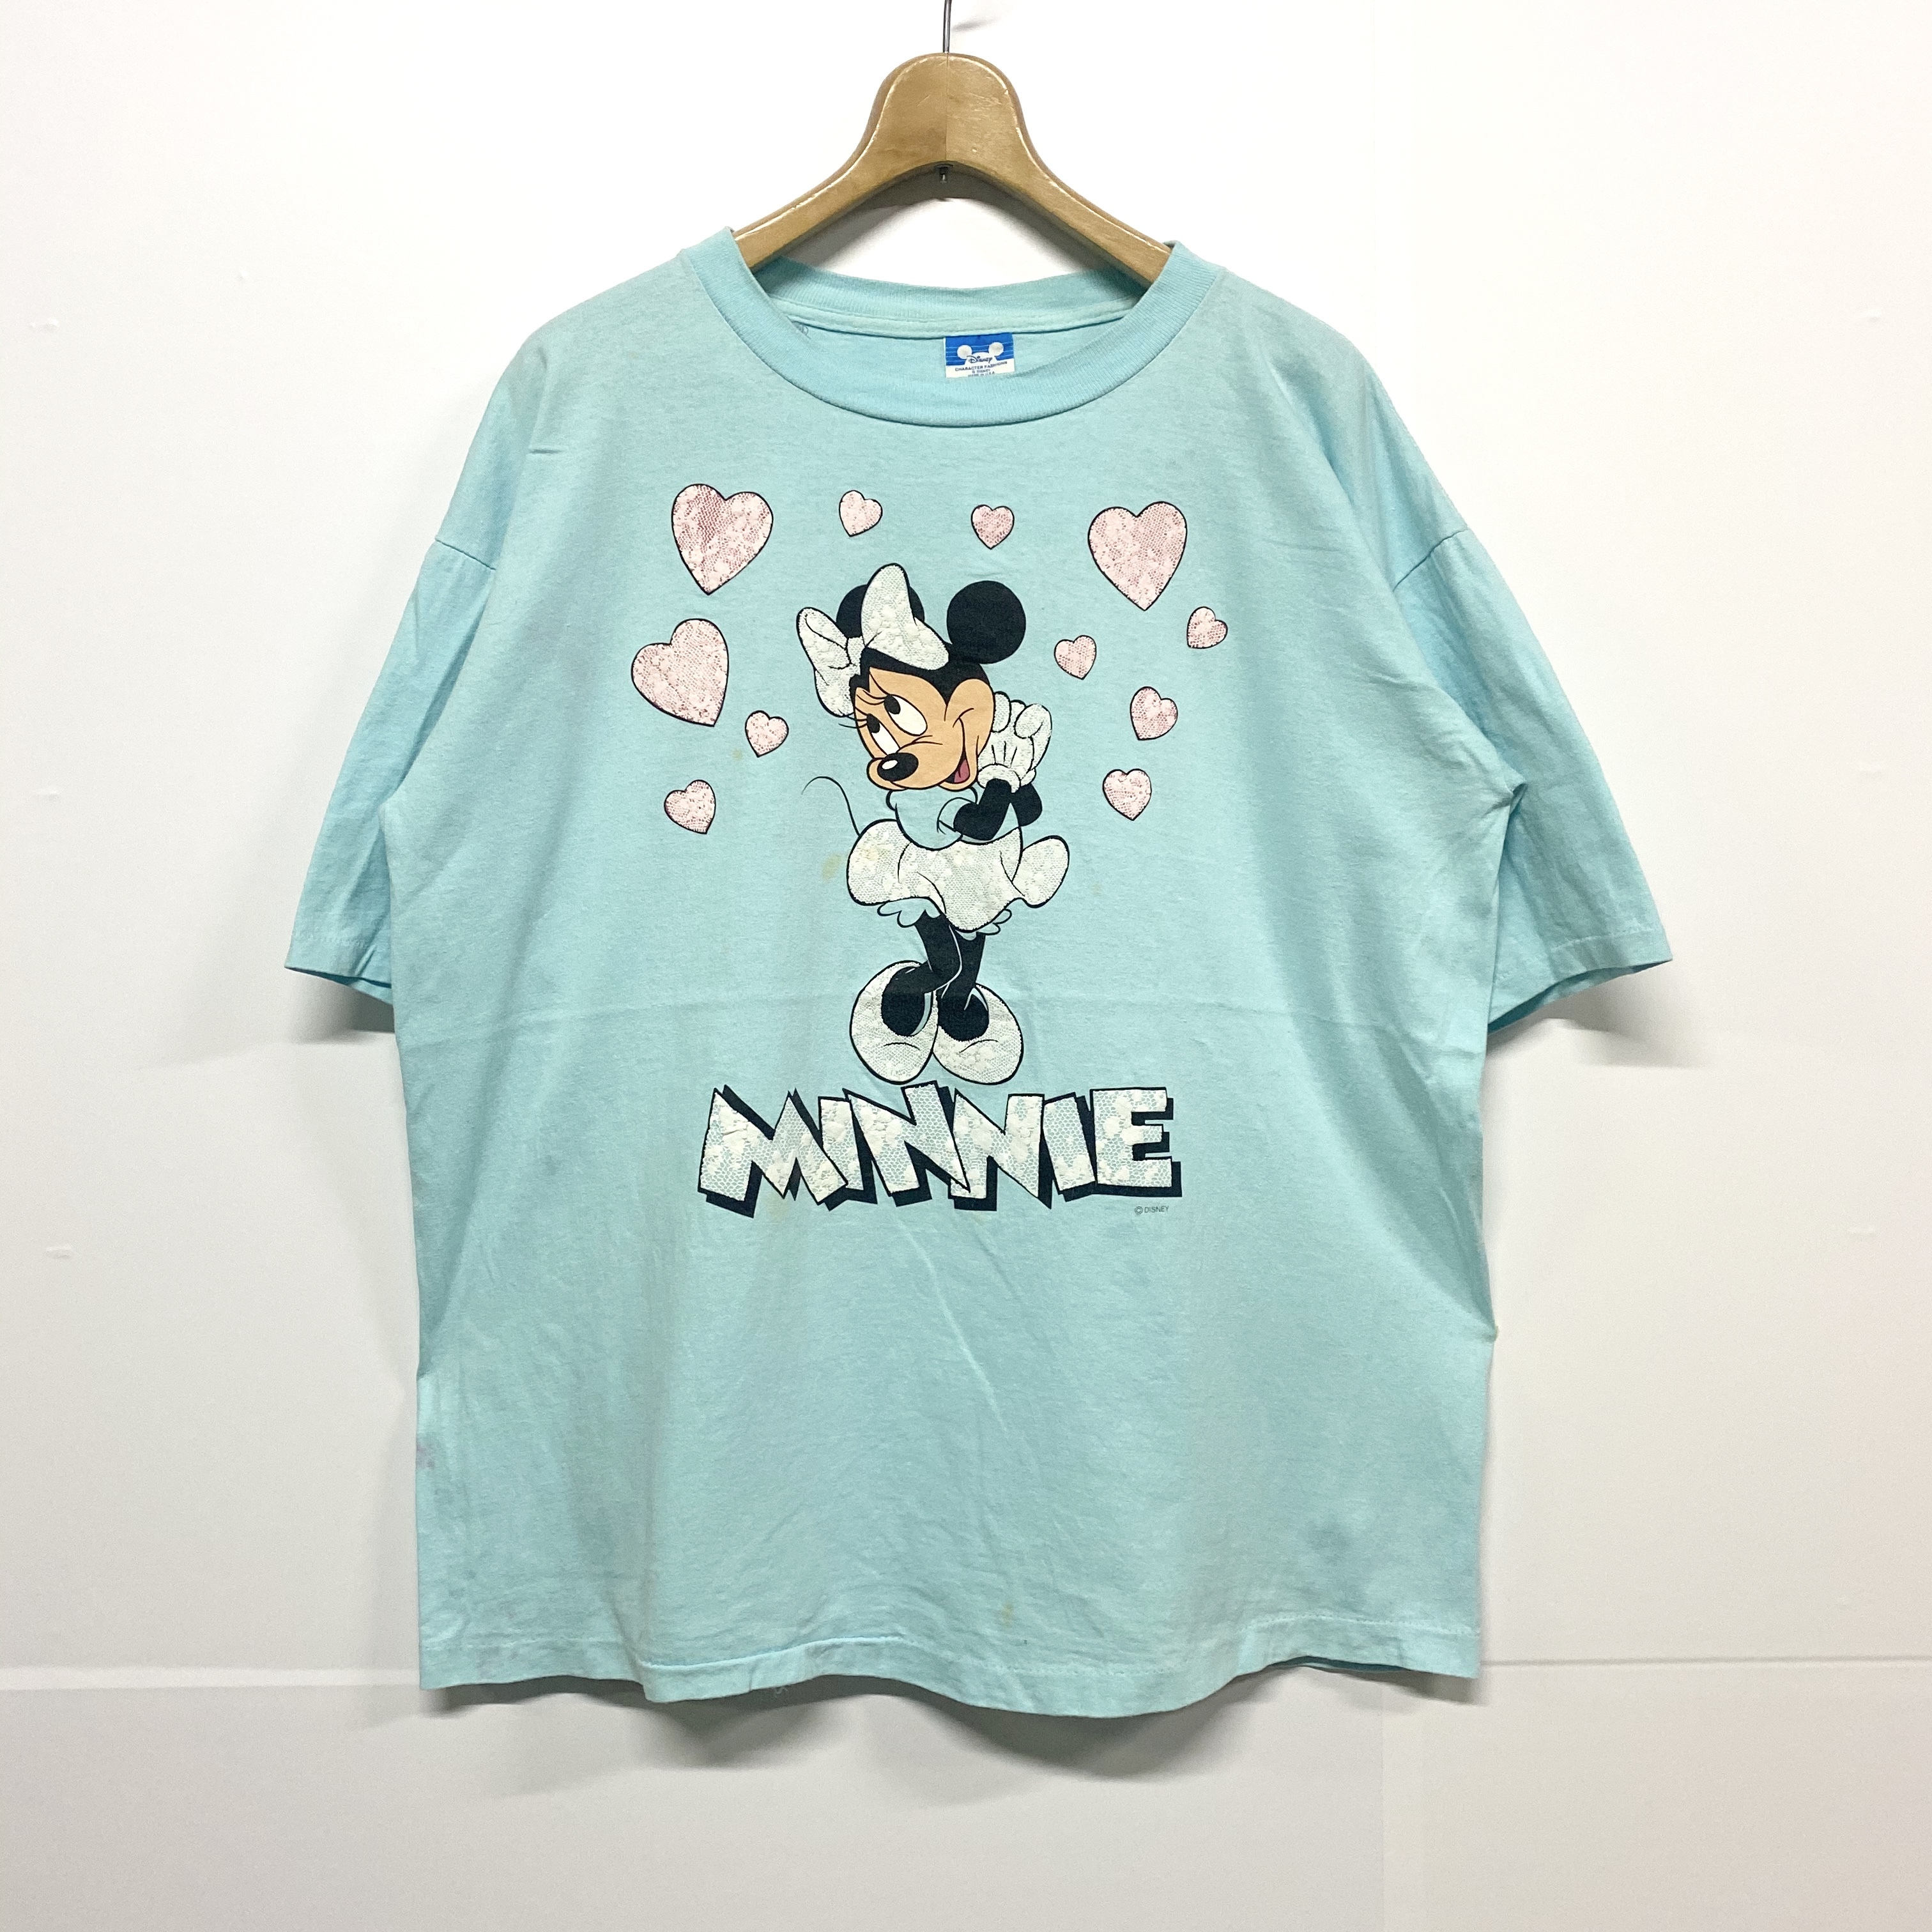 80年代 Disney ディズニー Minnie ミニーマウス プリントtシャツ ヴィンテージ メンズxl 古着 Tシャツ Al Cave 古着屋 公式 古着通販サイト 8 31まで 夏物最大50 Off開催中